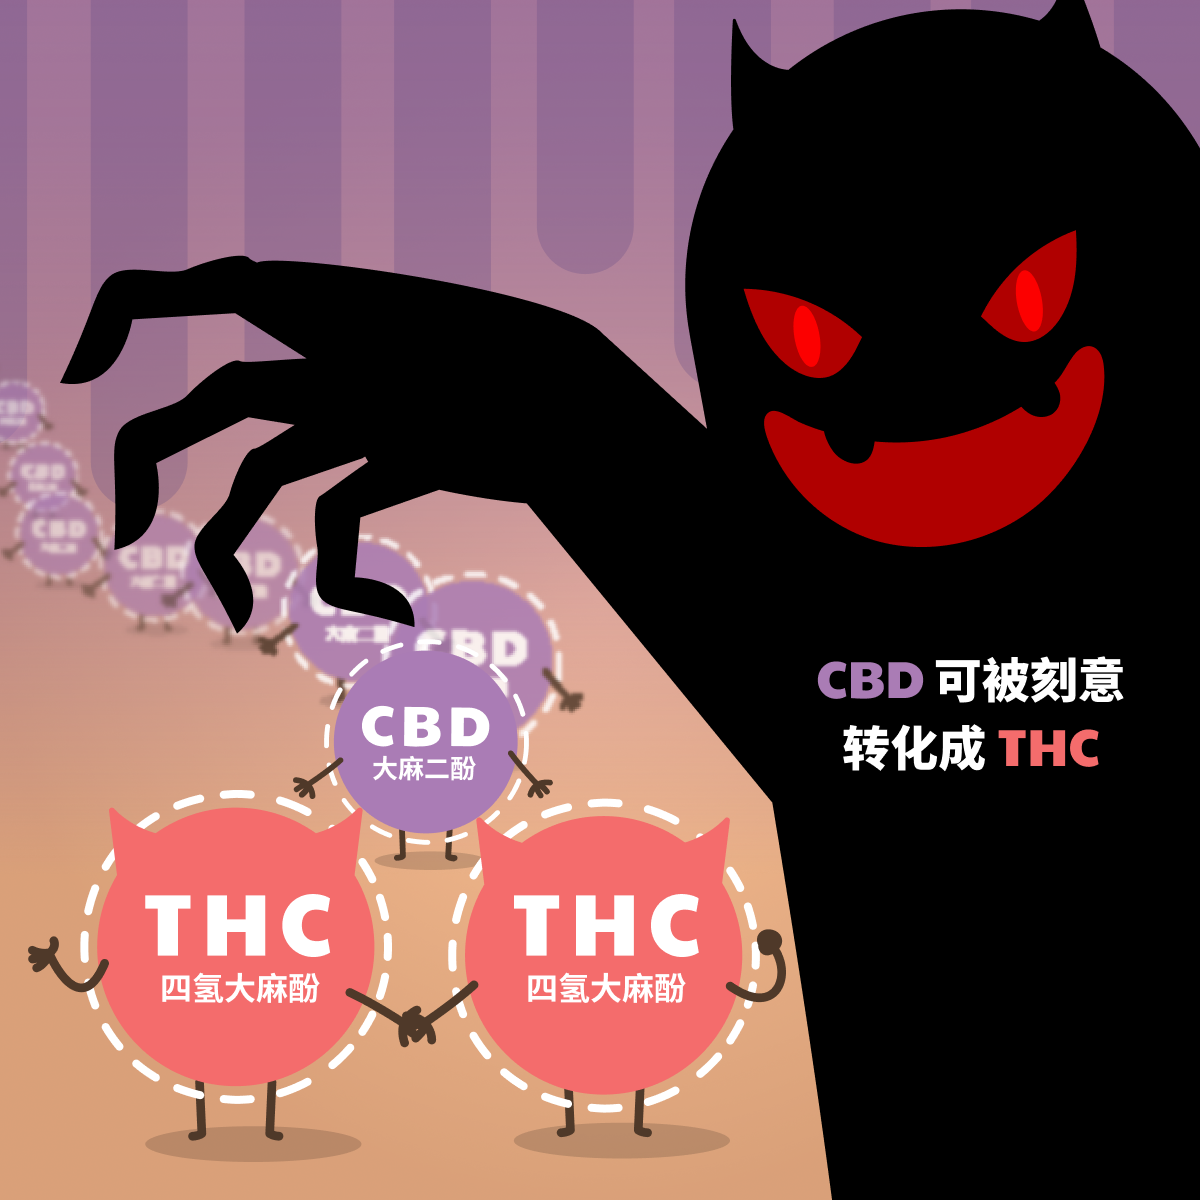 CBD可被刻意转化成THC